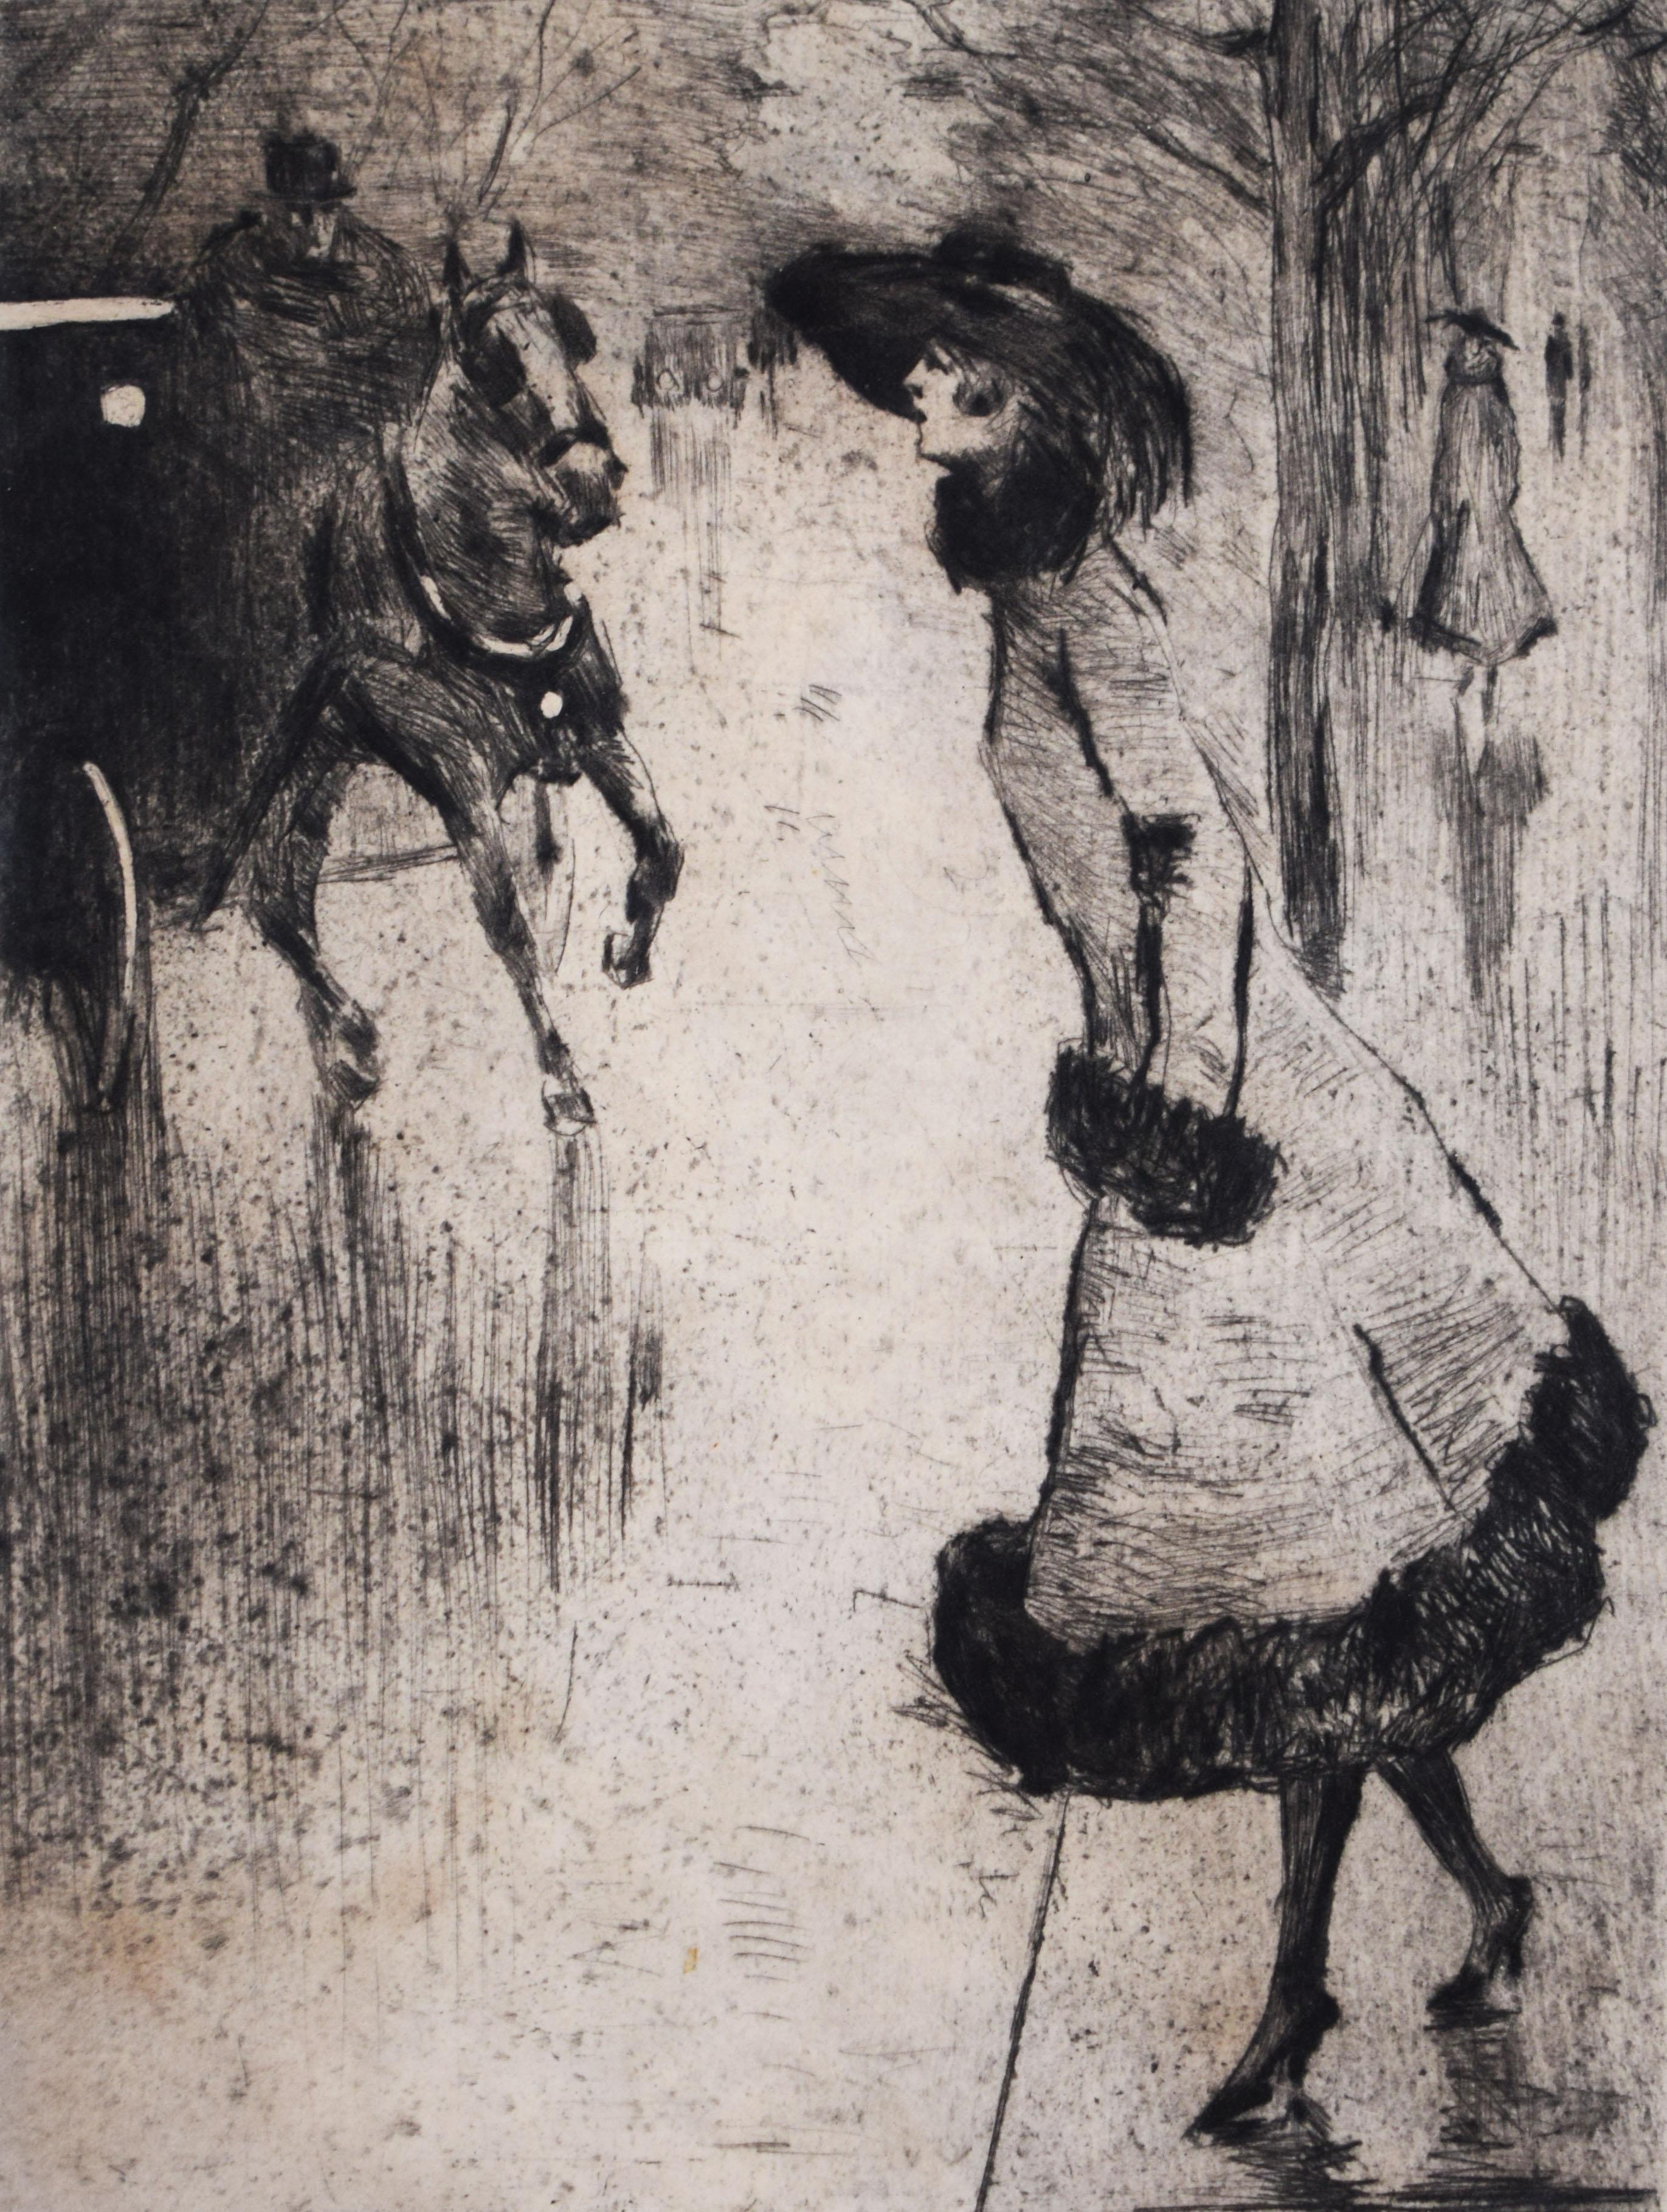 Lesser Ury Figurative Print – Dame, die eine Kutsche ruft  Dame, eine Droschkerufend – Deutscher Impressionismus